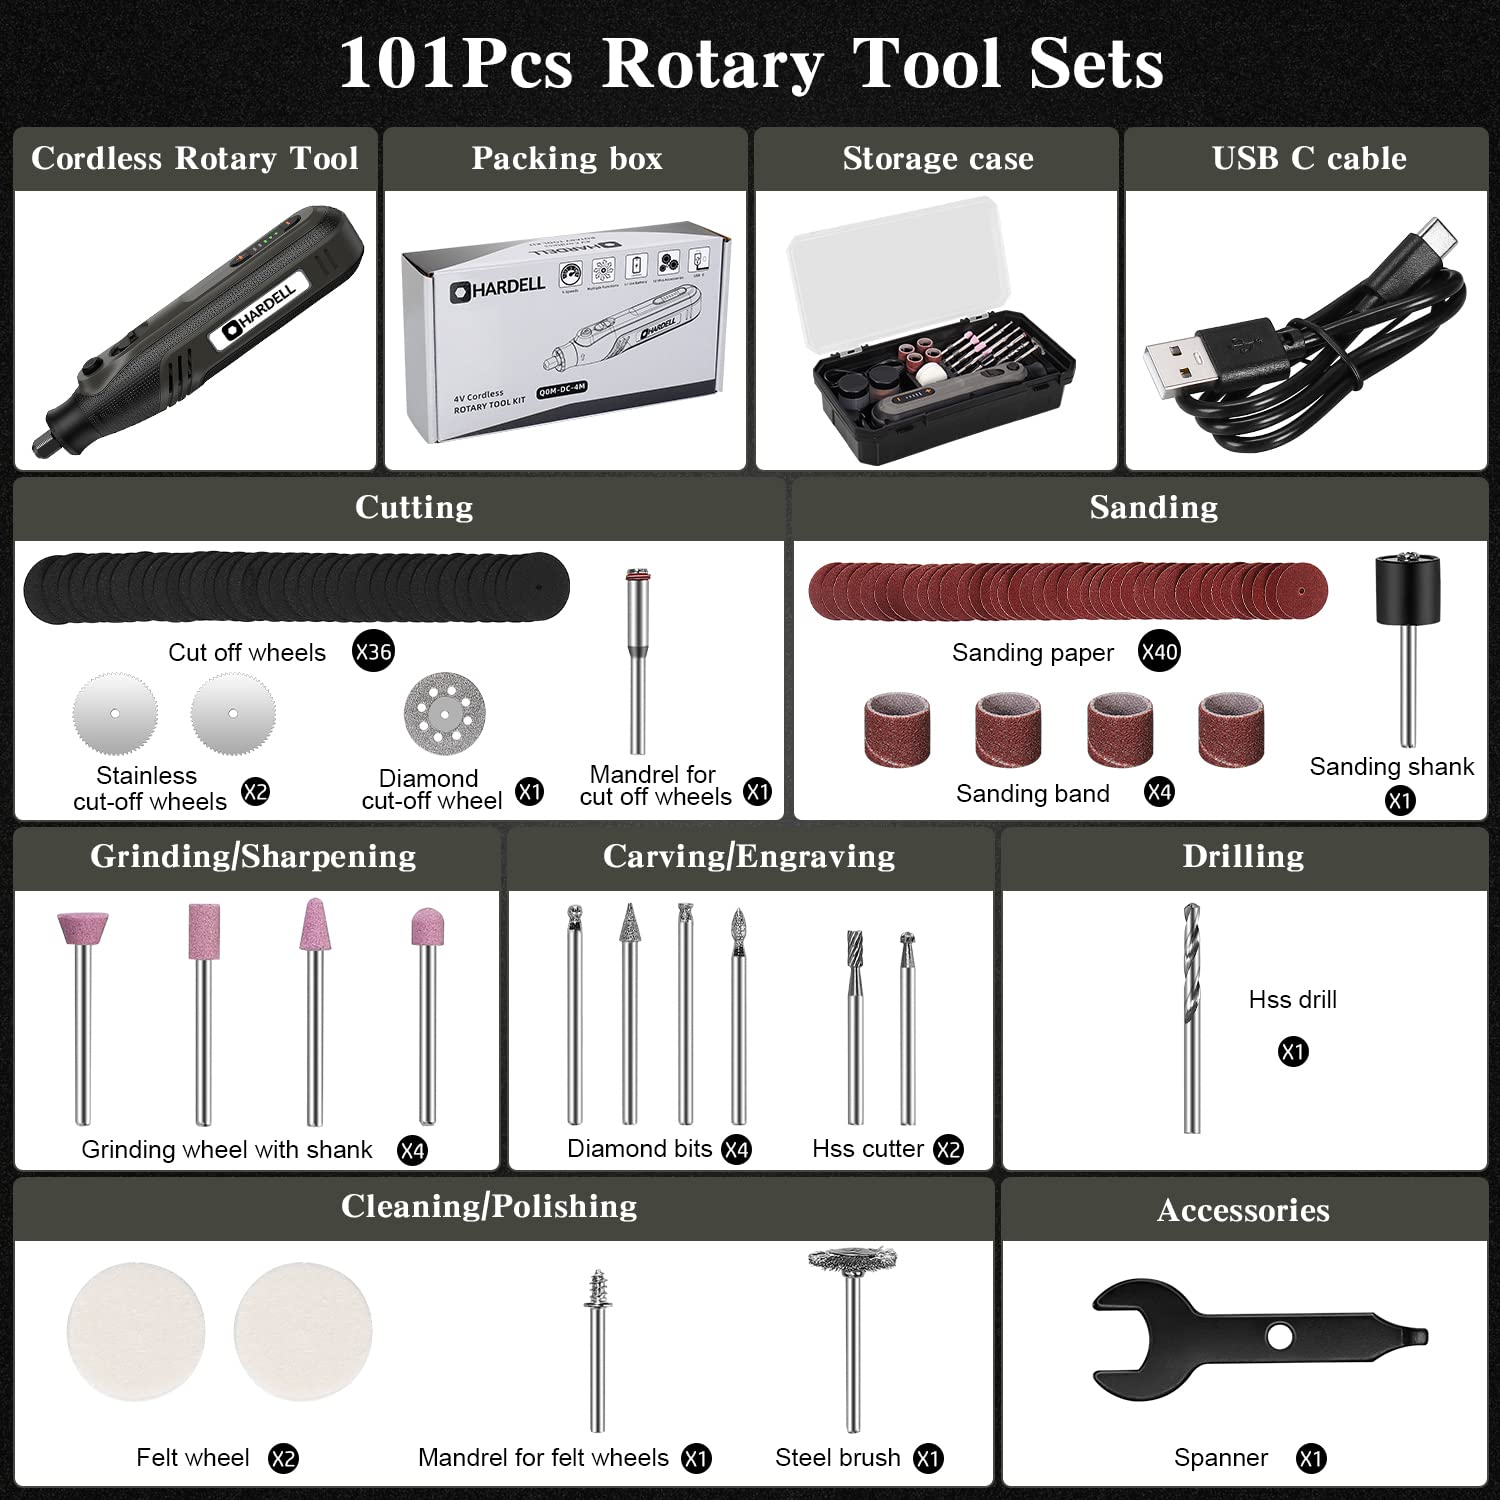 HARDELL Cordless Rotary Tool, 2.0Ah 4V Rotary Tool Kit 25000RPM & HARDELL 282Pcs Rotary Tool Accessories Kit